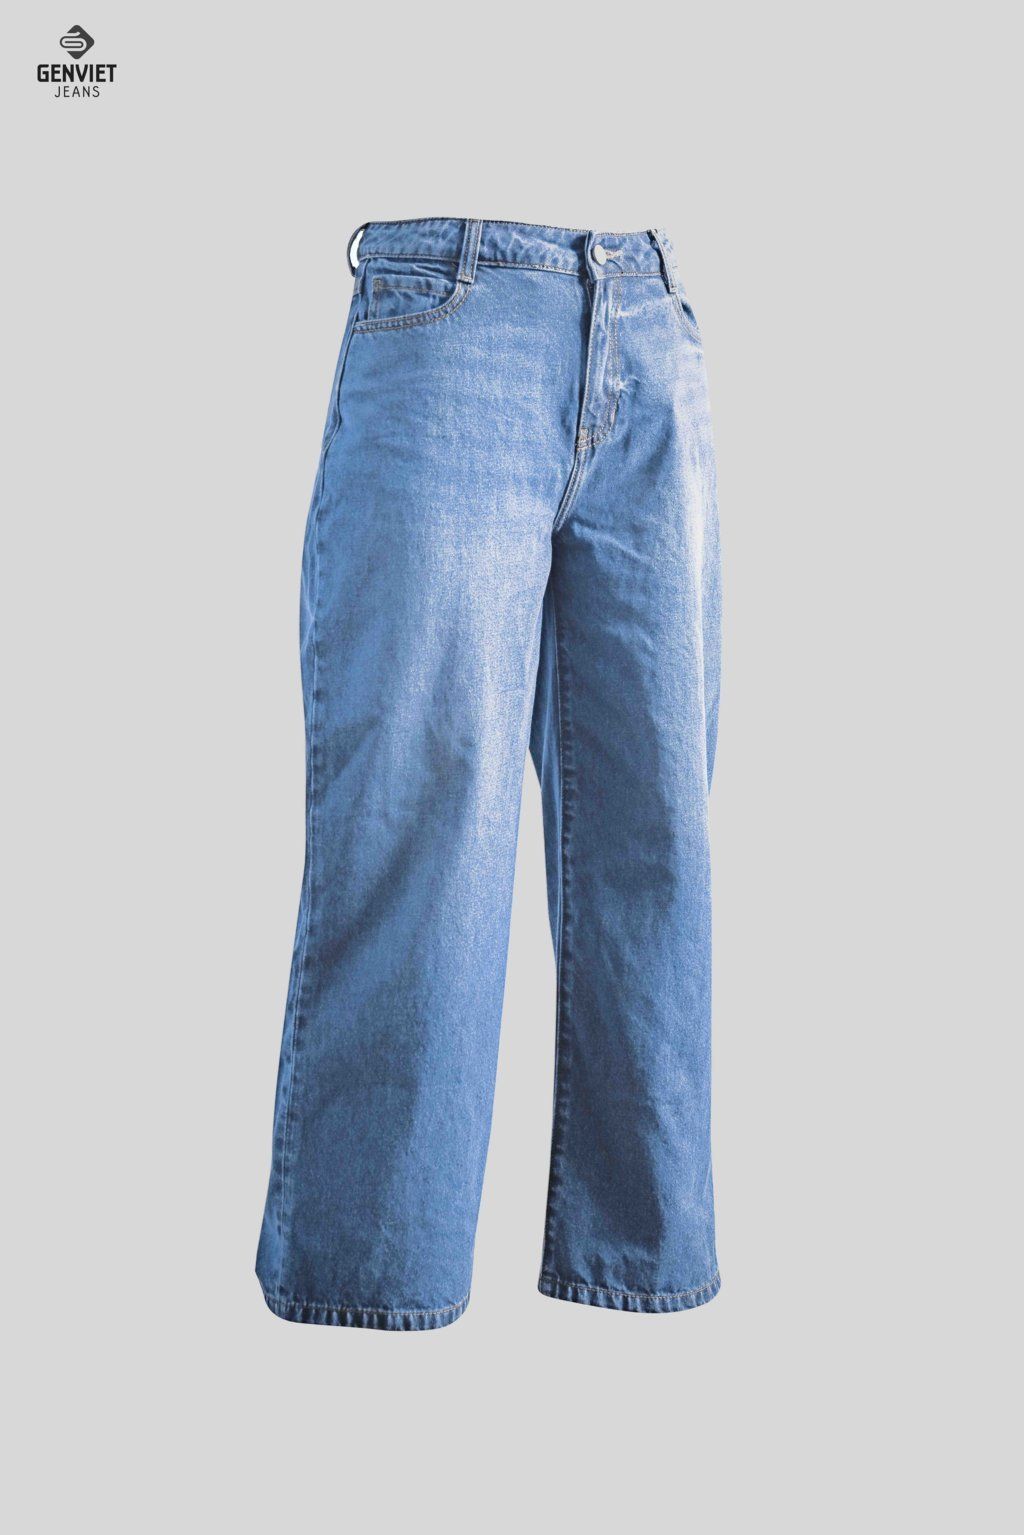  Quần Dài Nữ Jeans Suông TQ124J8156 